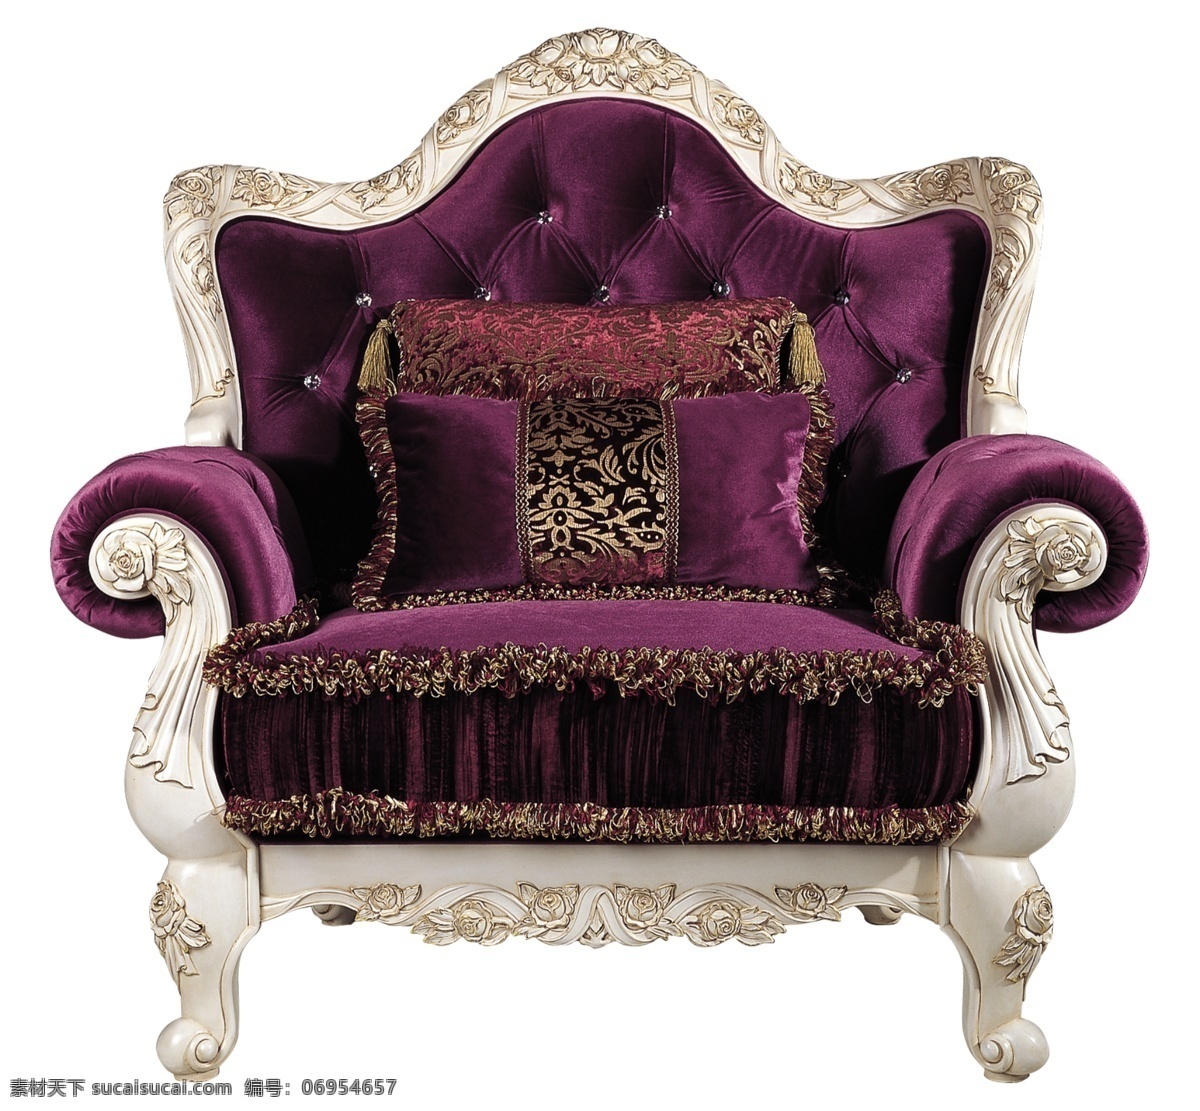 紫色 椅子 家具素材 座椅 紫色椅子 房地产 精美座椅 华丽座椅 宫殿座椅 华美座椅 家具精美家具 psd源文件